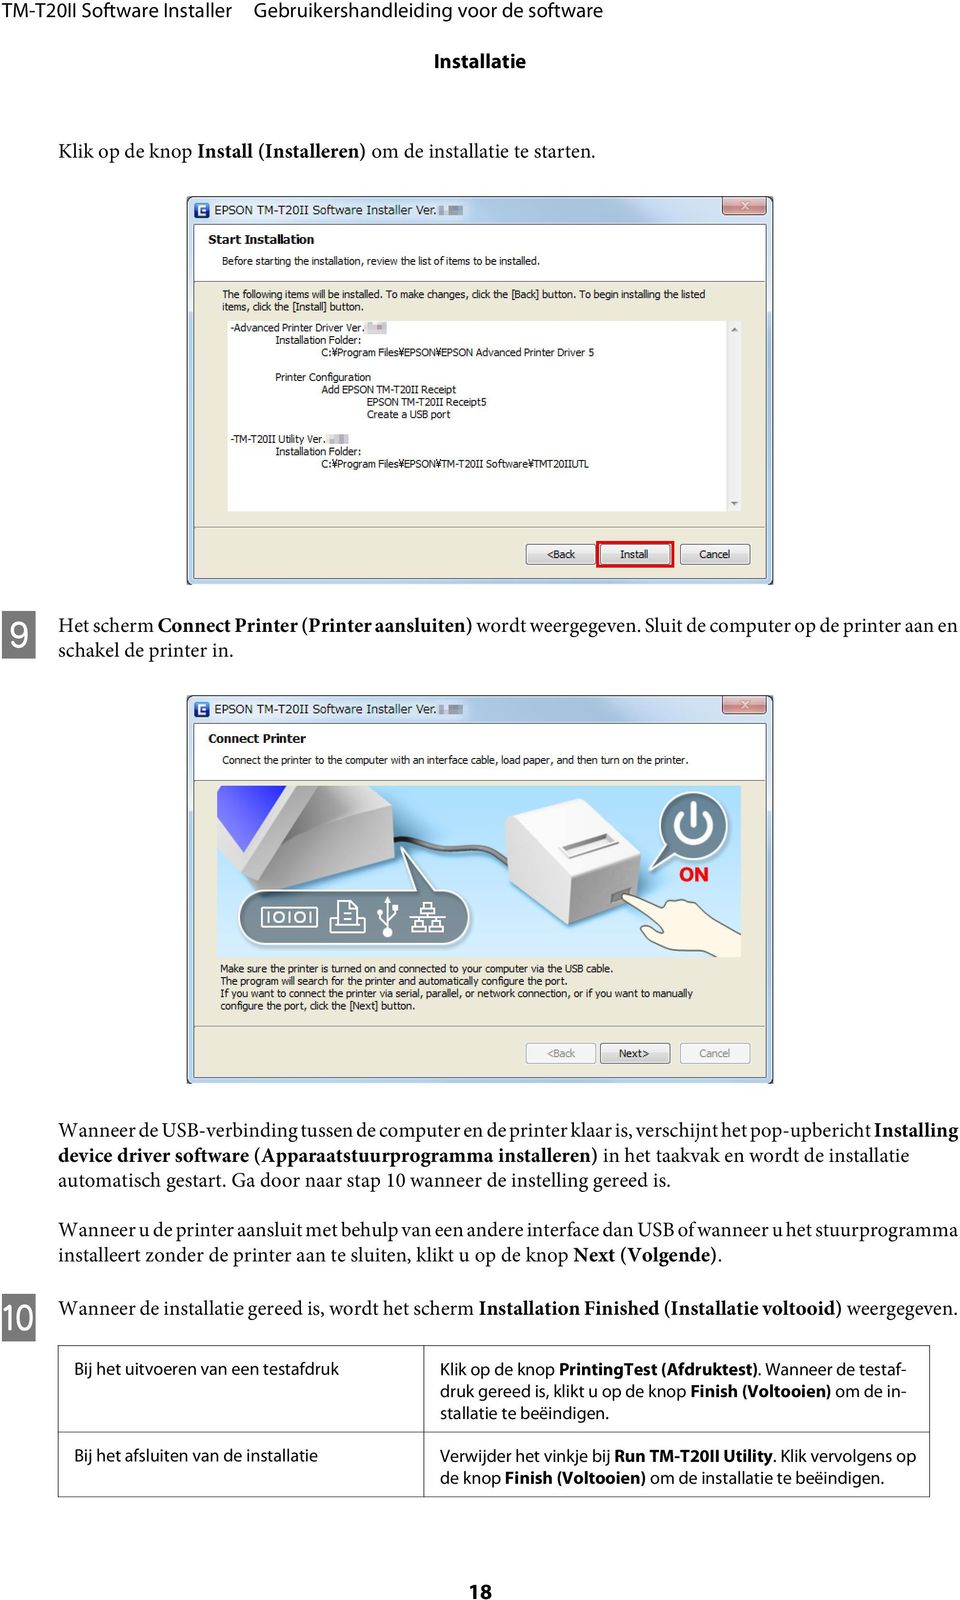 Wanneer de USB-verbinding tussen de computer en de printer klaar is, verschijnt het pop-upbericht Installing device driver software (Apparaatstuurprogramma installeren) in het taakvak en wordt de